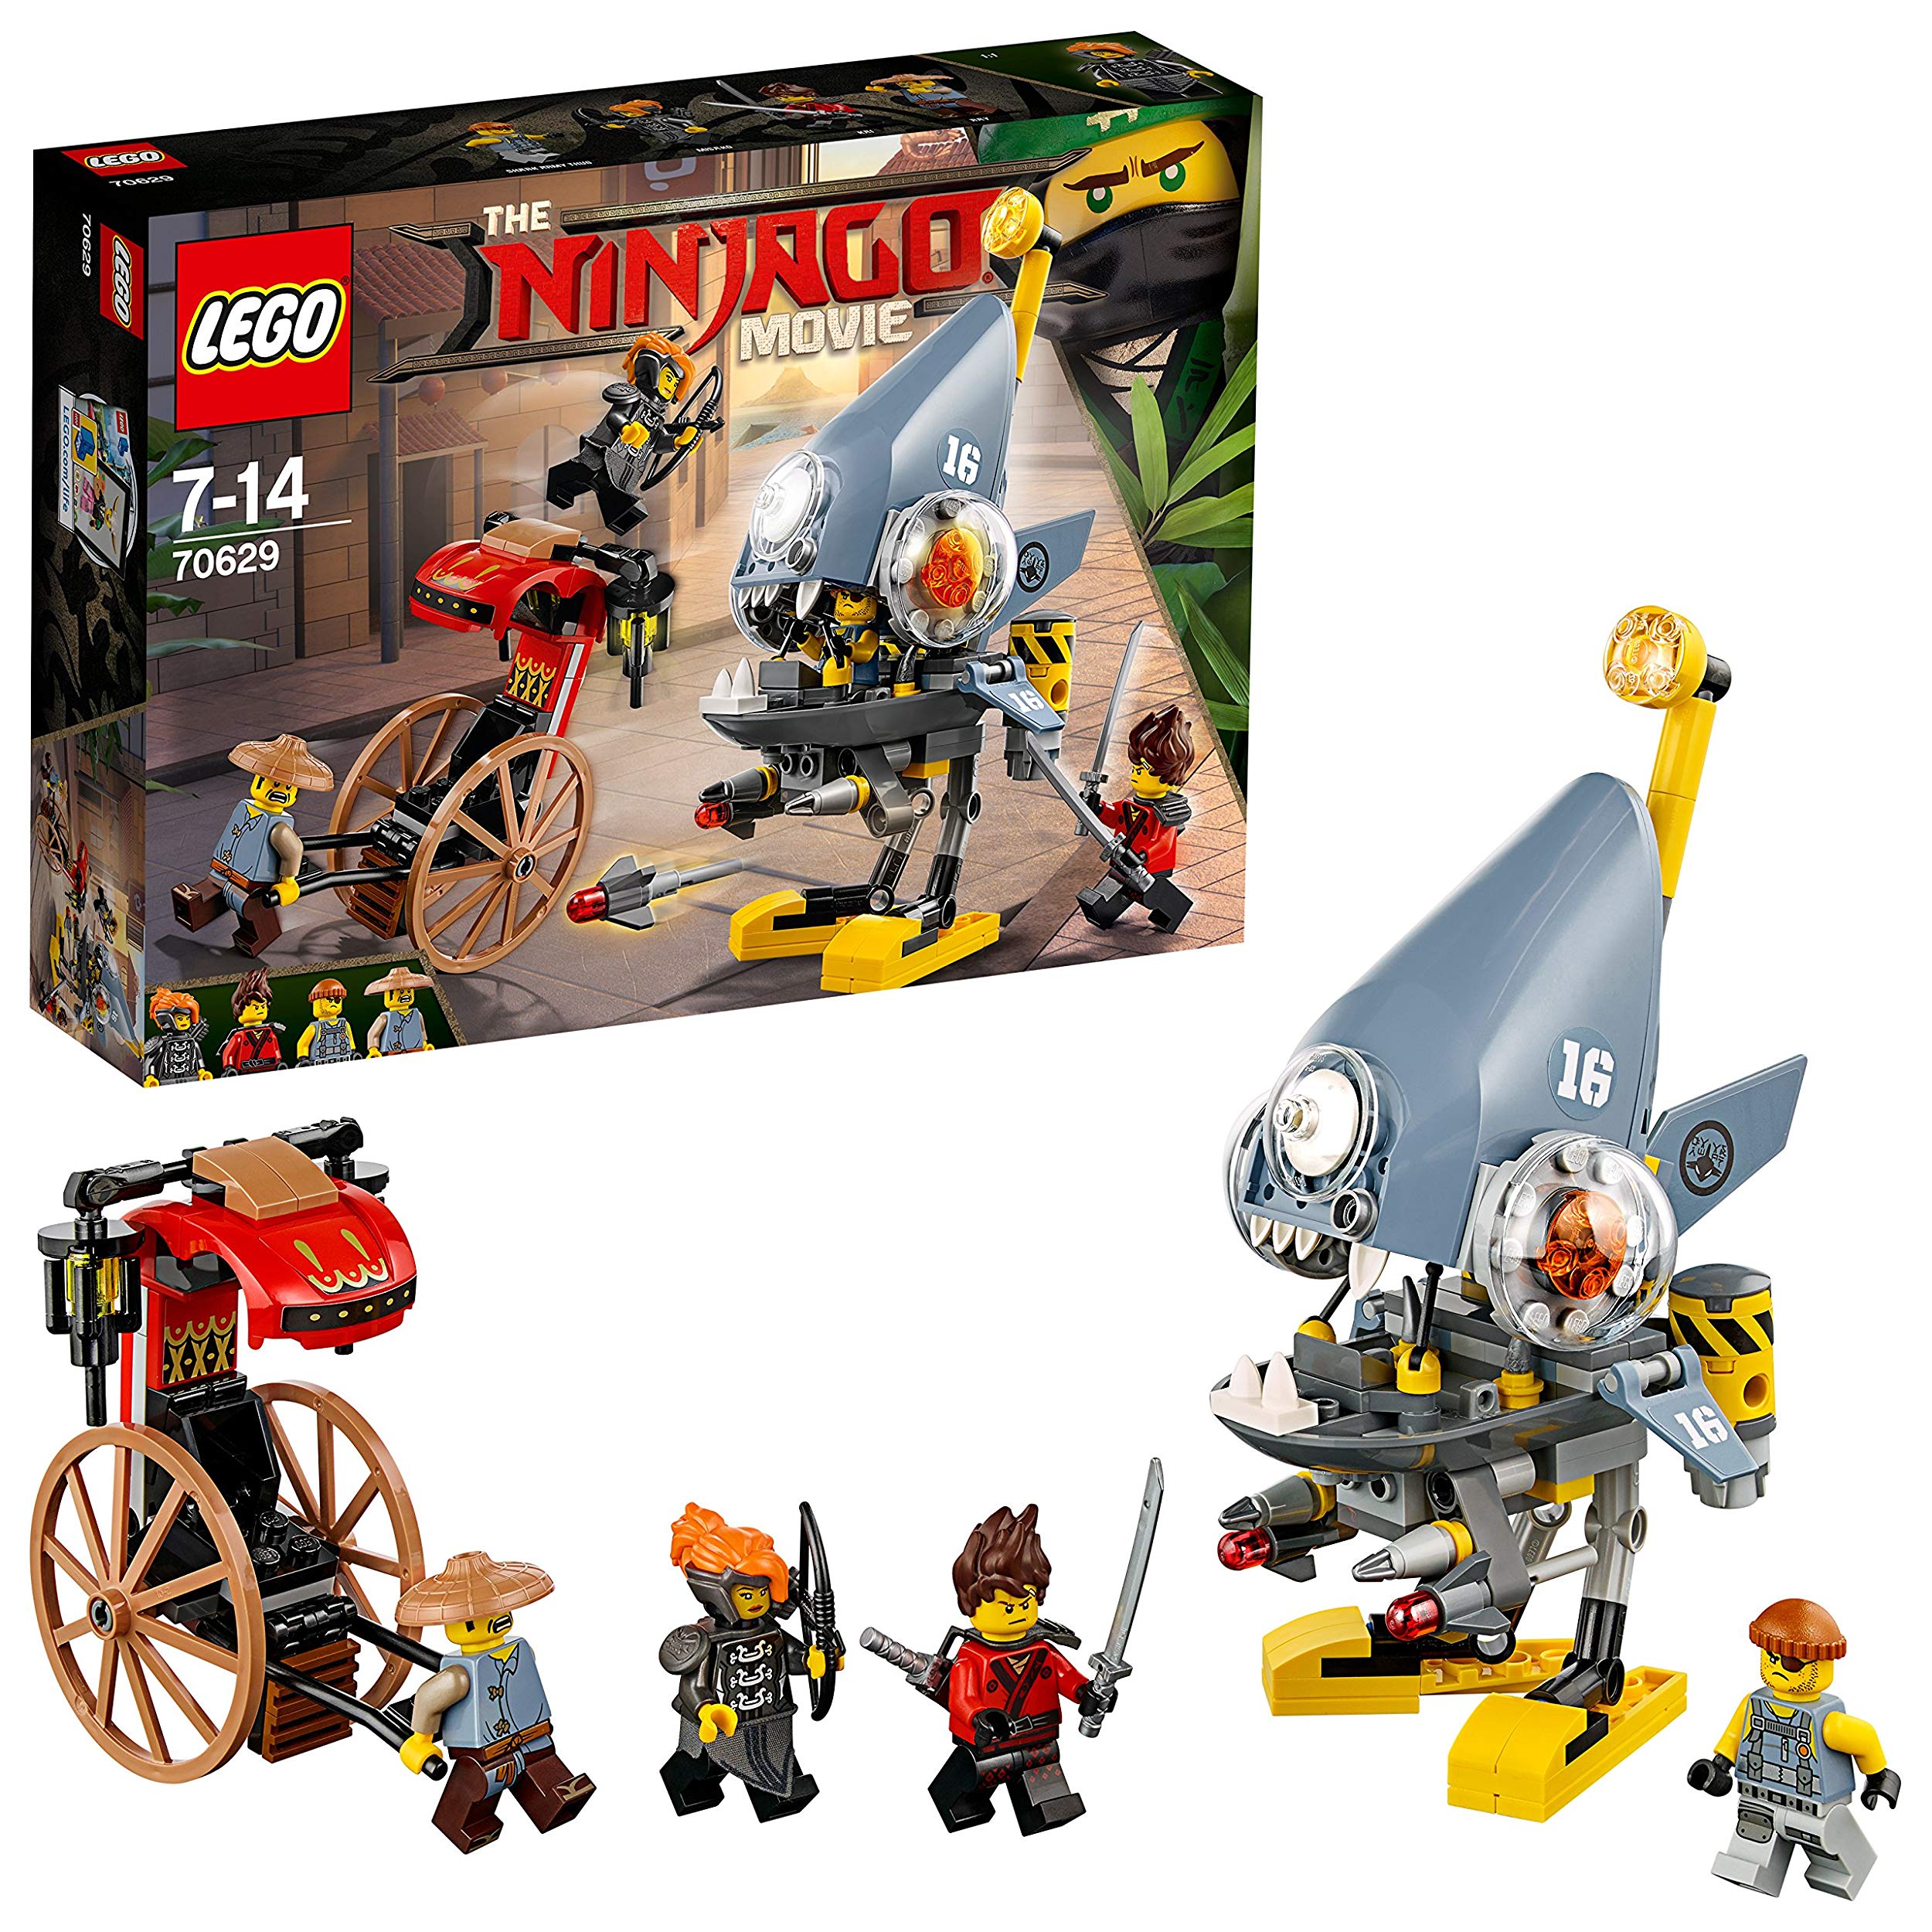 Lego Ninjago Piranha Attack Entertainment Toy